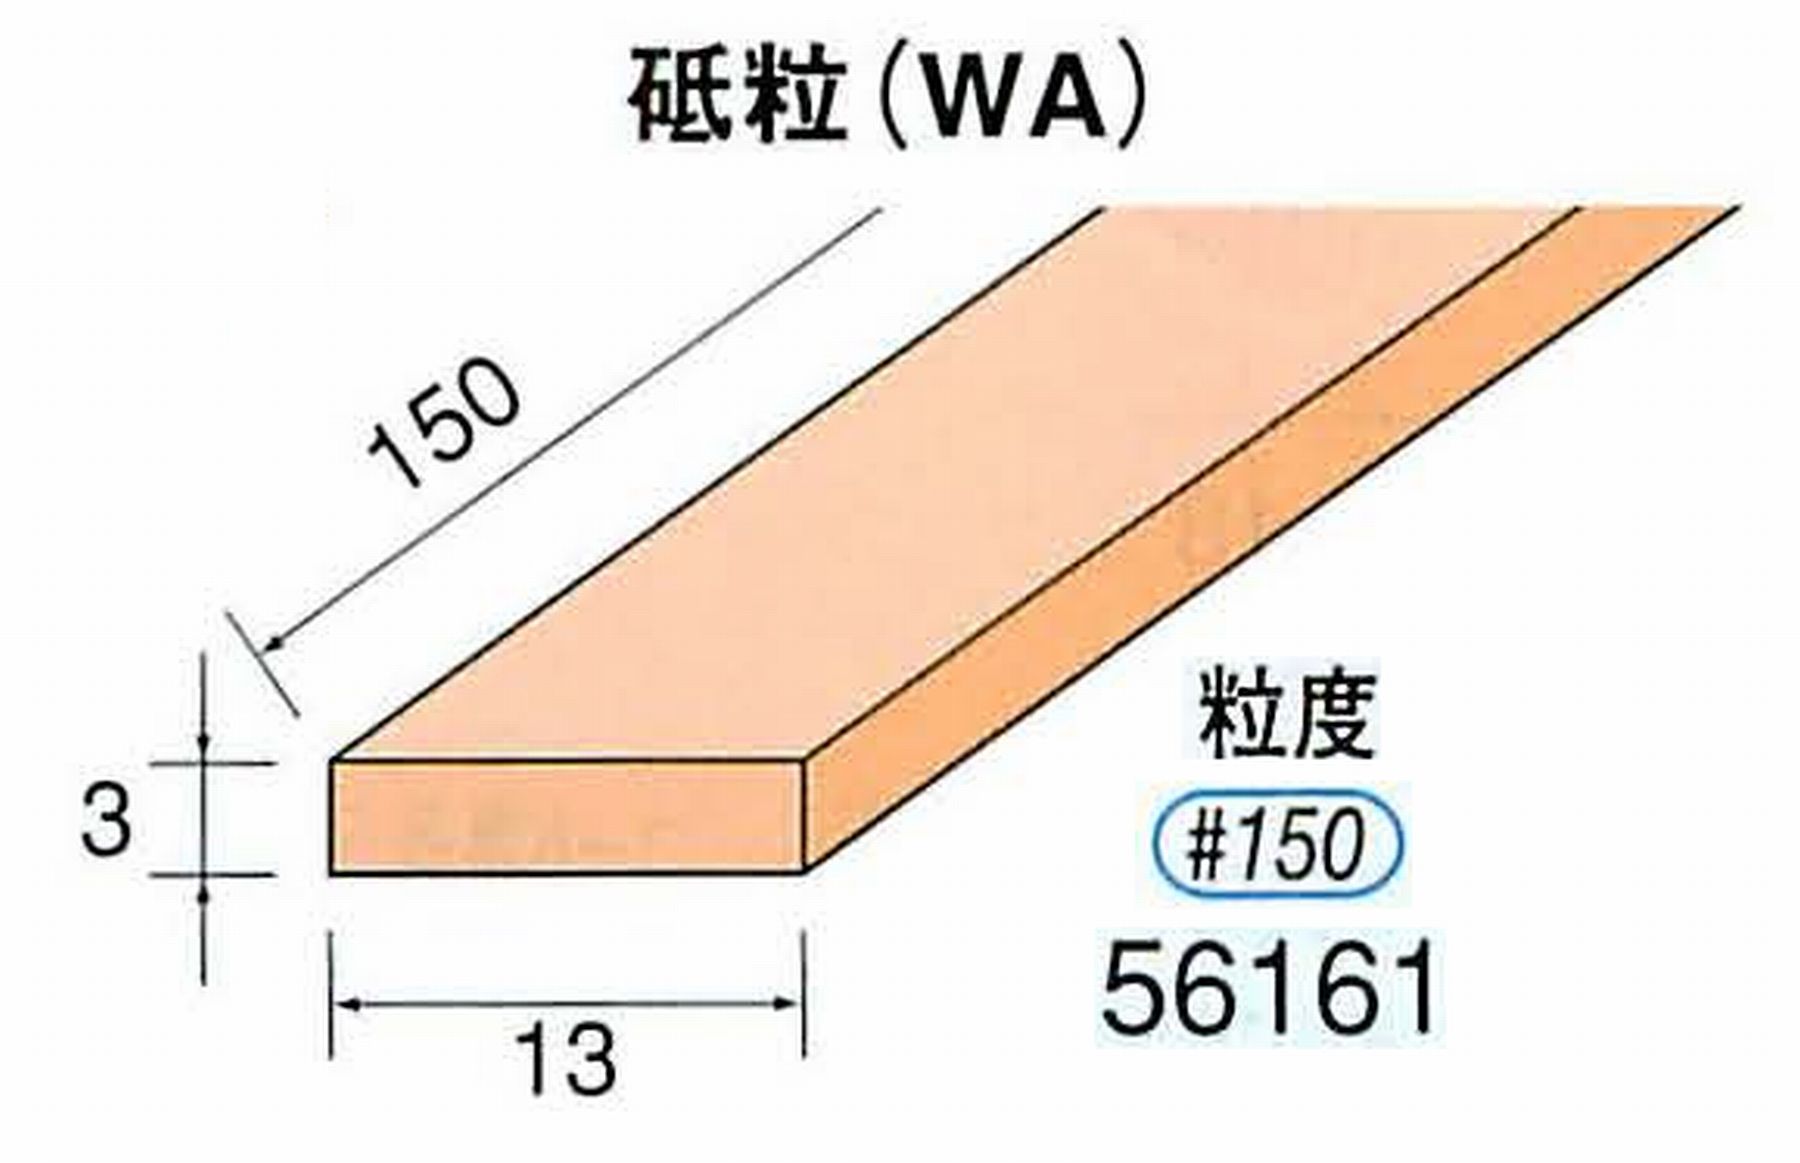 ナカニシ/NAKANISHI スティック砥石 スタンダードシリーズ 砥粒(WA) 56161